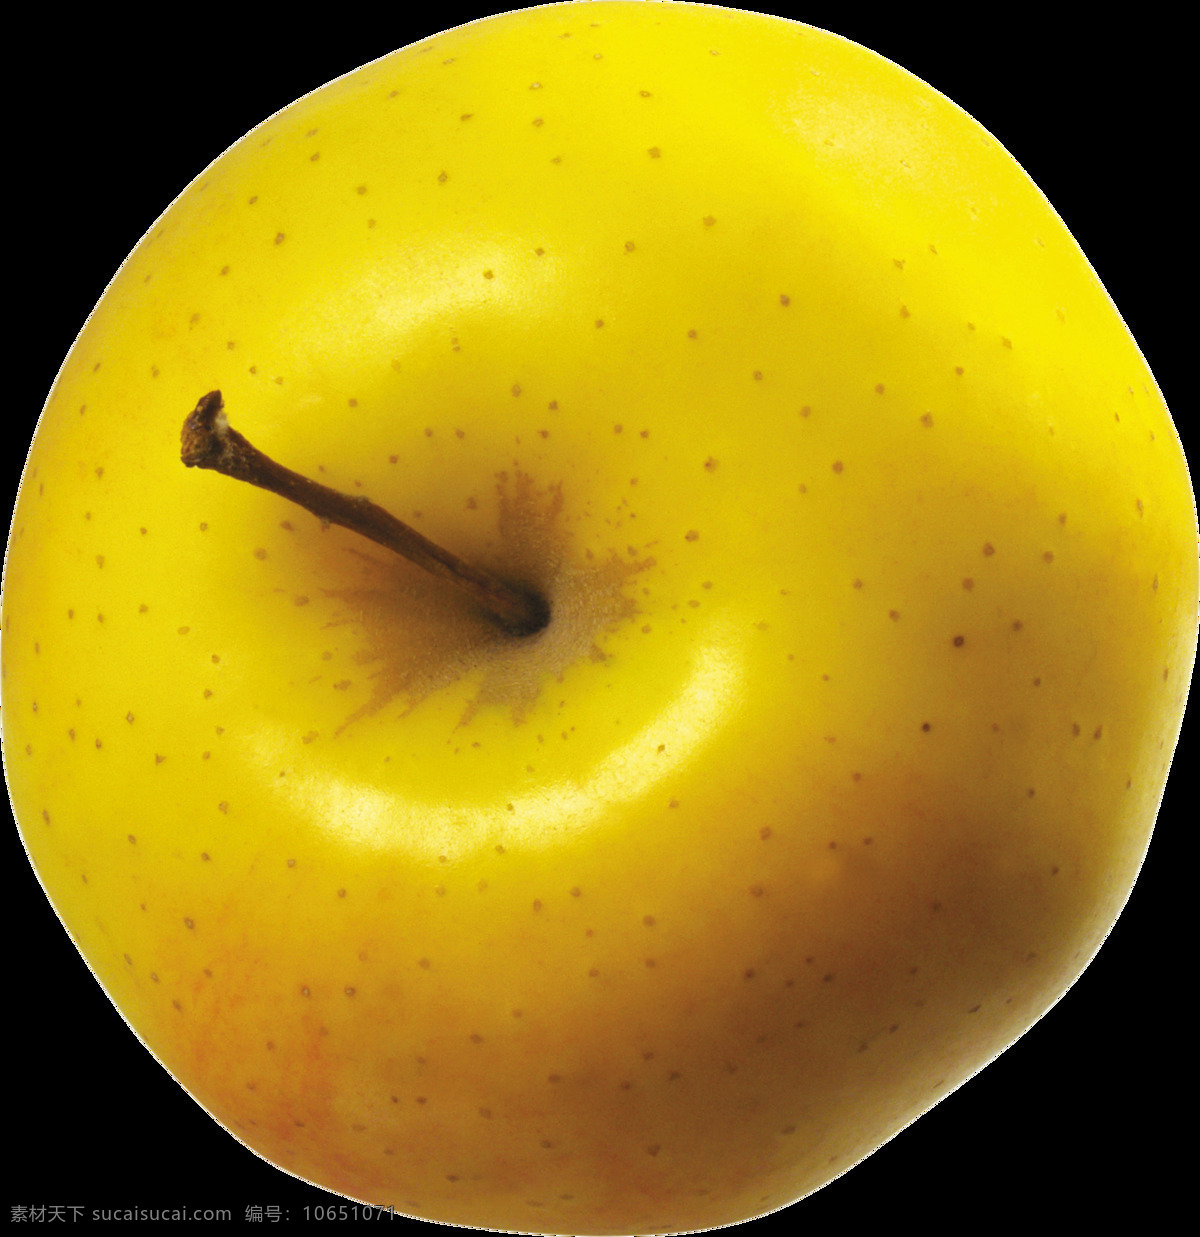 写实 黄 苹果 免 抠 透明 图 层 青苹果 苹果卡通图片 苹果logo 苹果简笔画 壁纸高清 大苹果 红苹果 苹果梨树 苹果商标 金毛苹果 青苹果榨汁